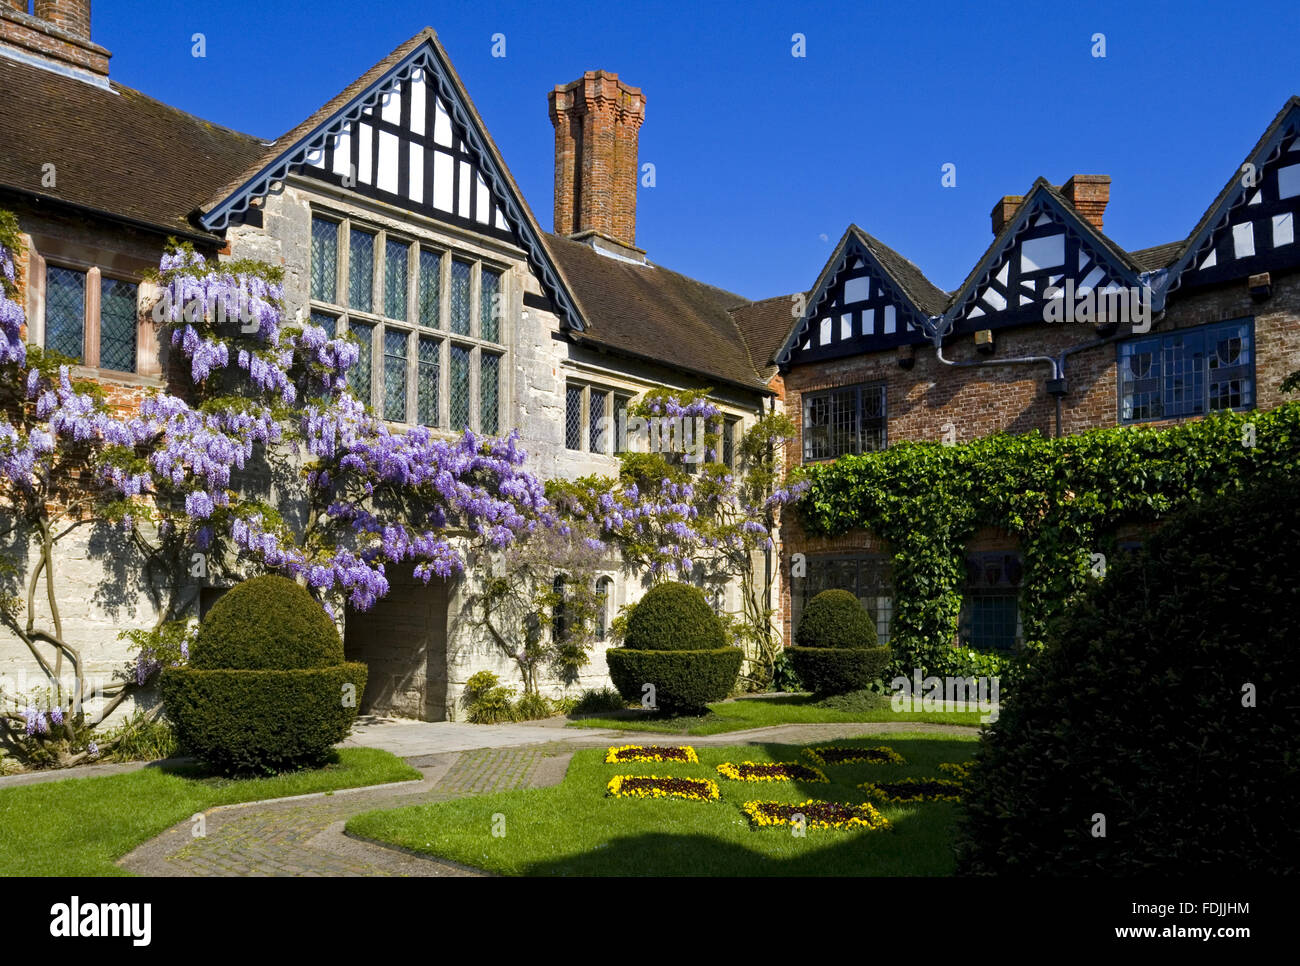 Der Hof in Baddesley Clinton, Warwickshire, mit Blick auf das Torhaus Reichweite und herrliche große Stube Fenster. Garten im Innenhof entstand im Jahr 1889 durch Edward Heneage Dering. Stockfoto